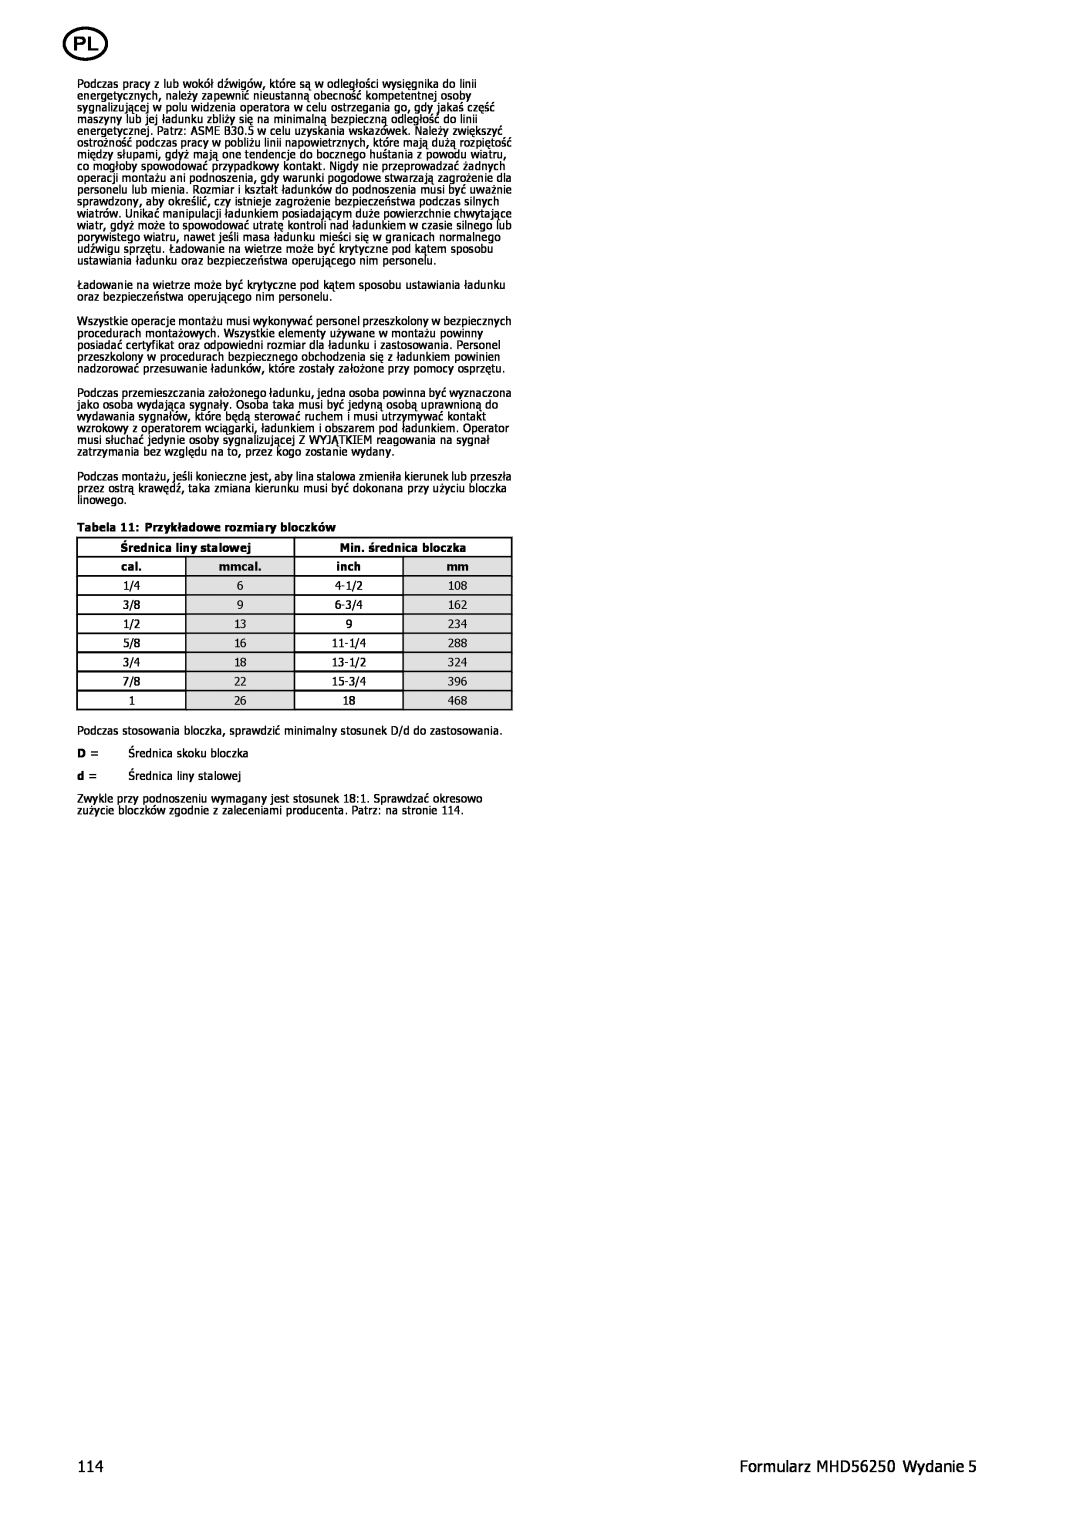 Ingersoll-Rand manual Formularz MHD56250 Wydanie, 11-1/4 